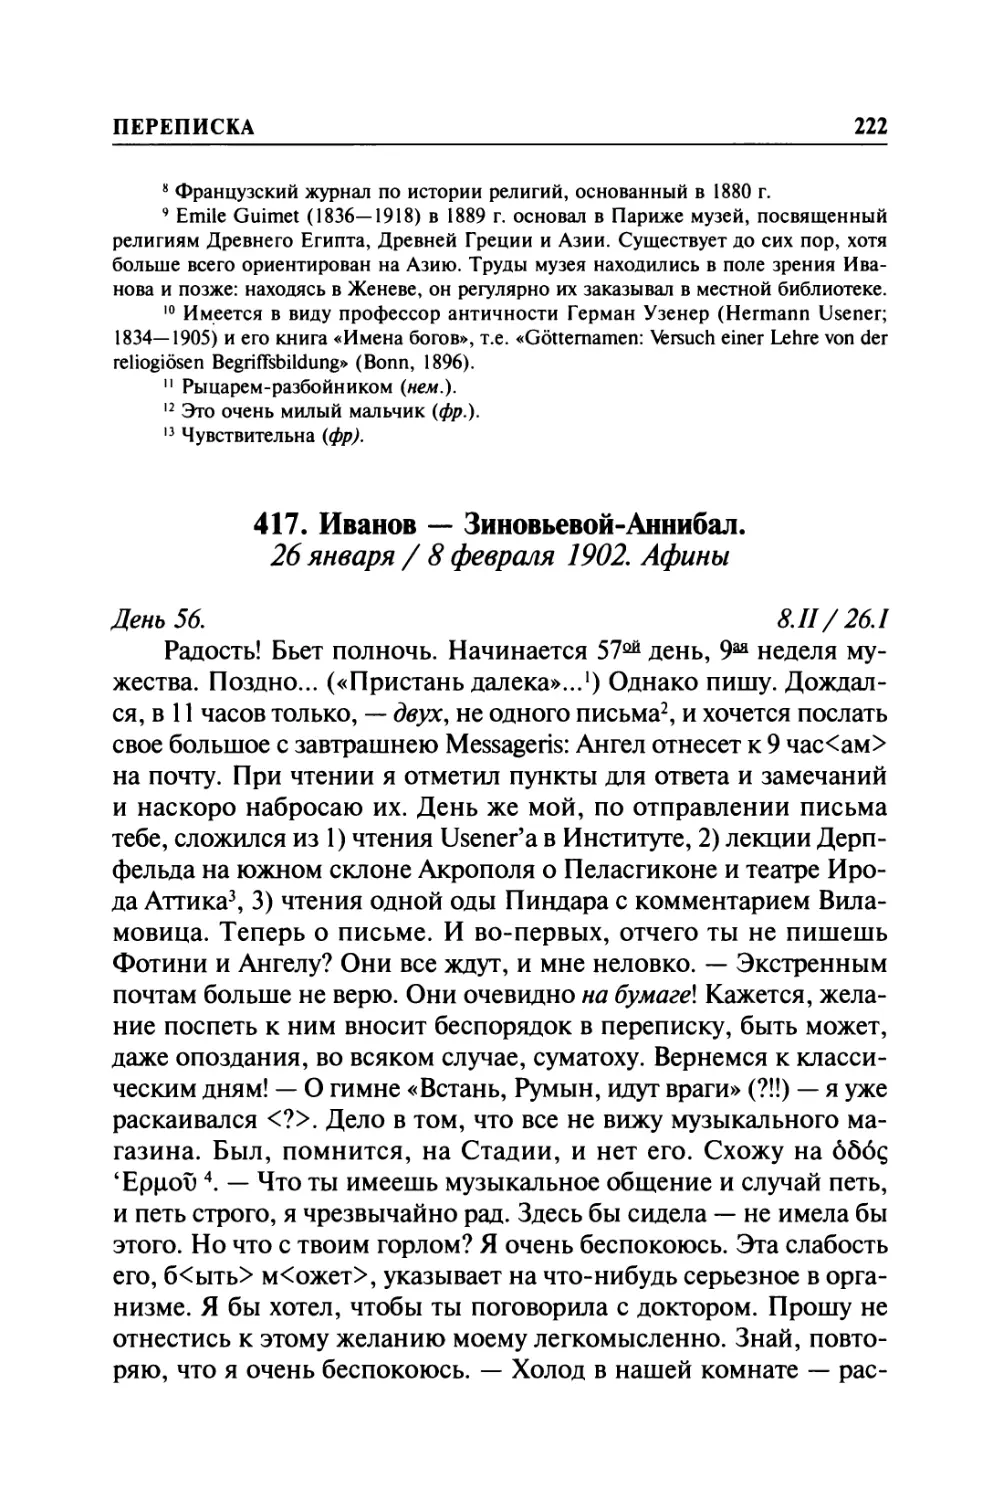 417. Иванов — Зиновьевой-Аннибал. 26 января / 8 февраля 1902. Афины